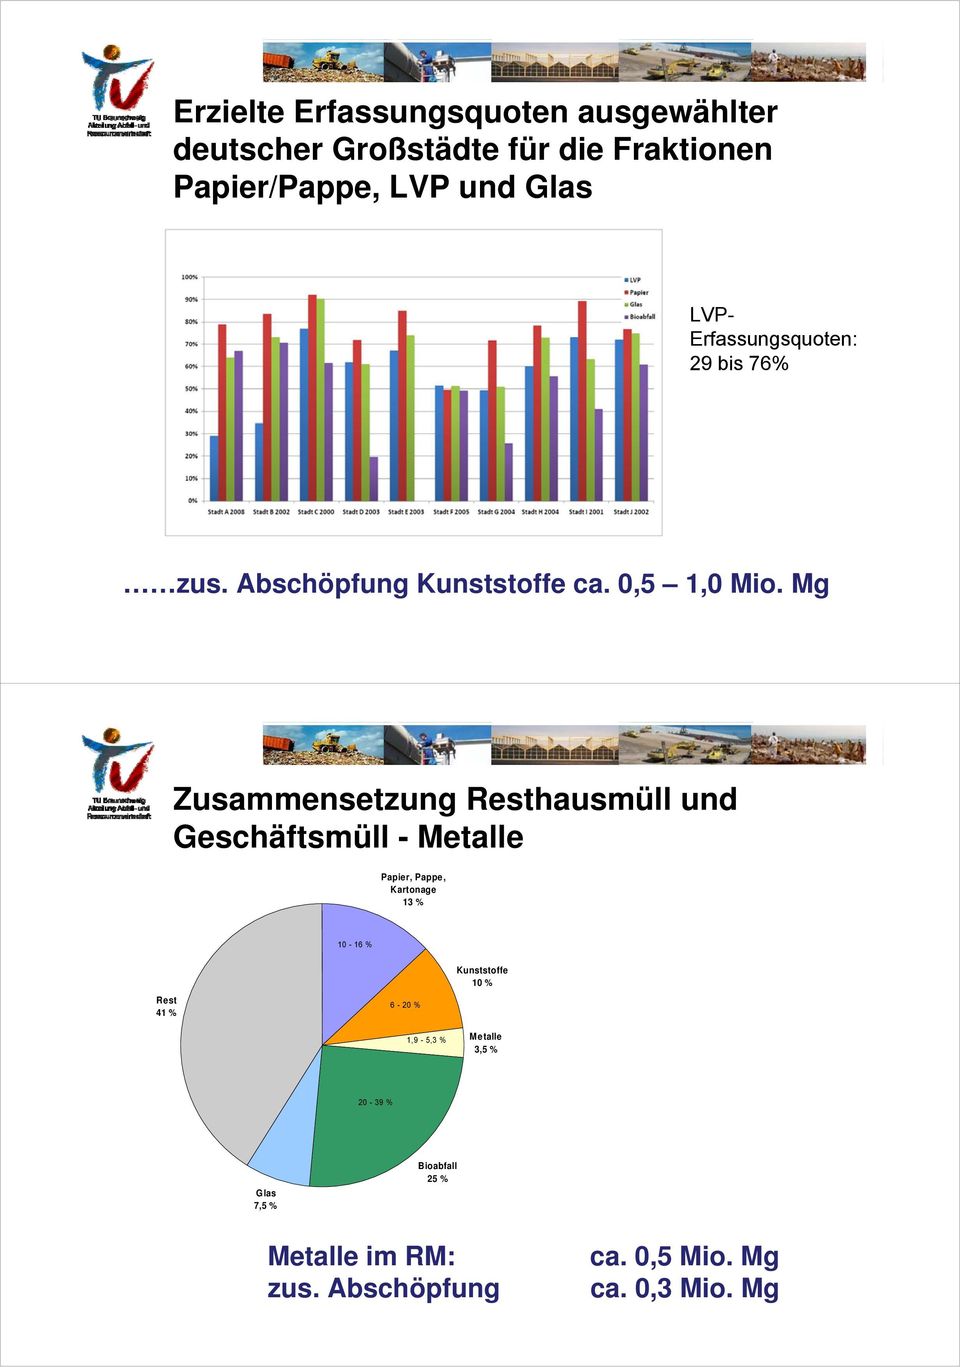 Mg Zusammensetzung Resthausmüll und Geschäftsmüll - Metalle Papier, Pappe, Kartonage 13 % 10-16 % Rest 41 %